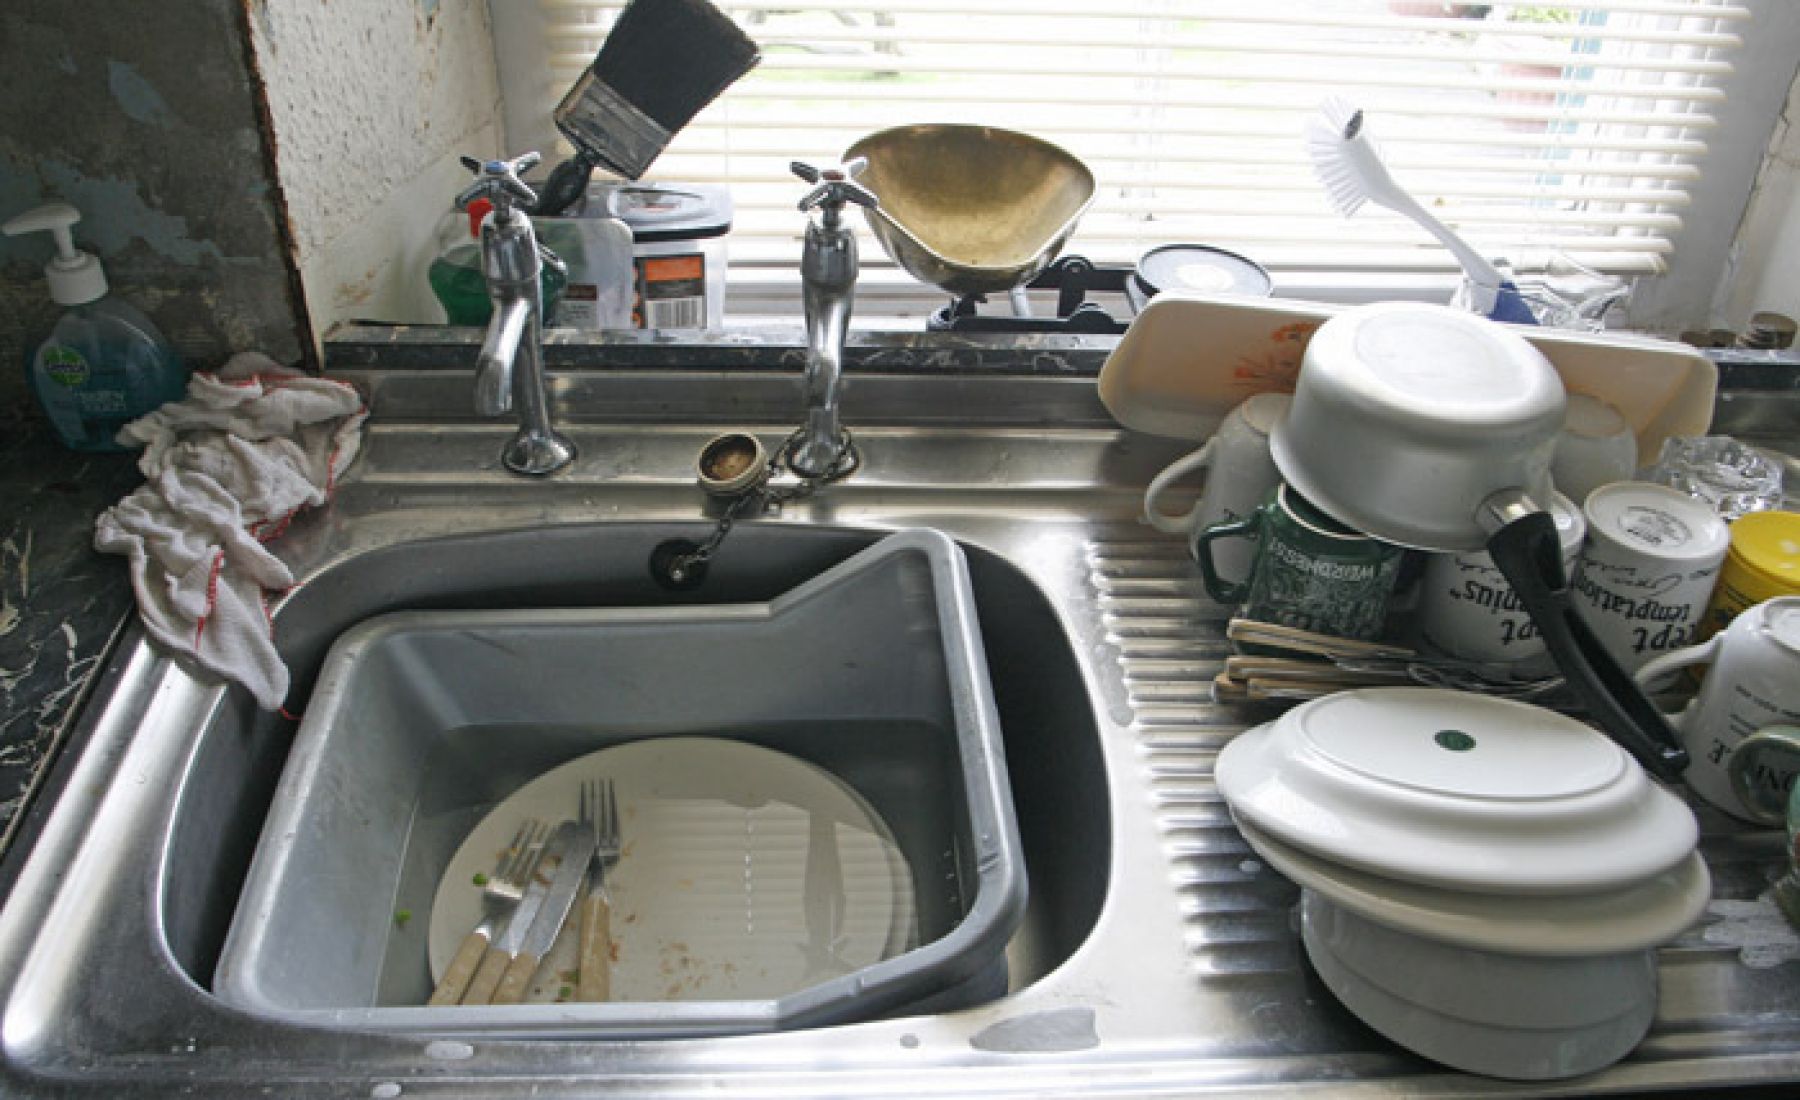 kitchen sink backed up black slime